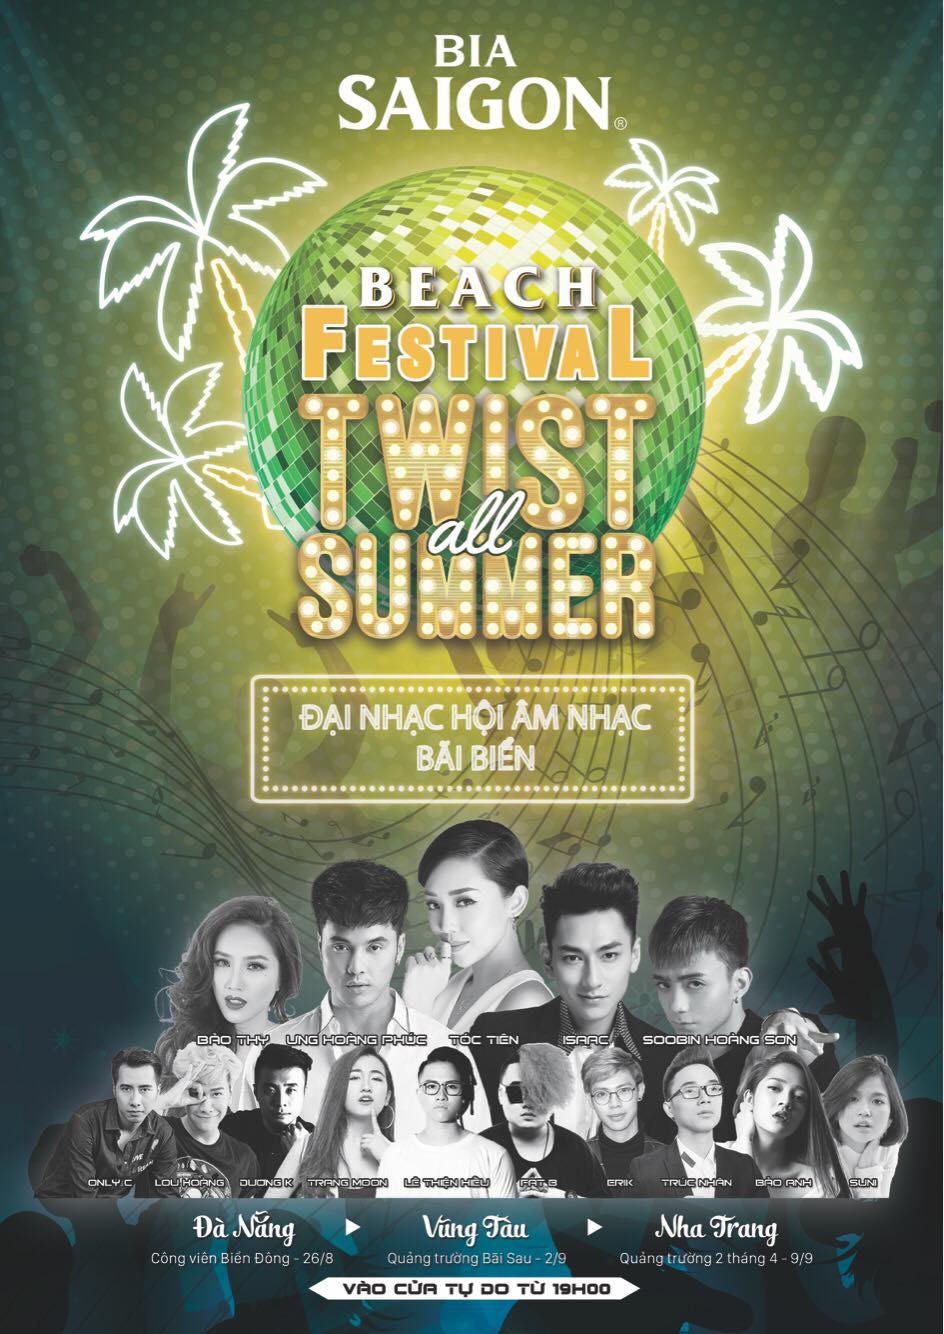 Beach Festival Twist all Summer - Bia Sài Gòn